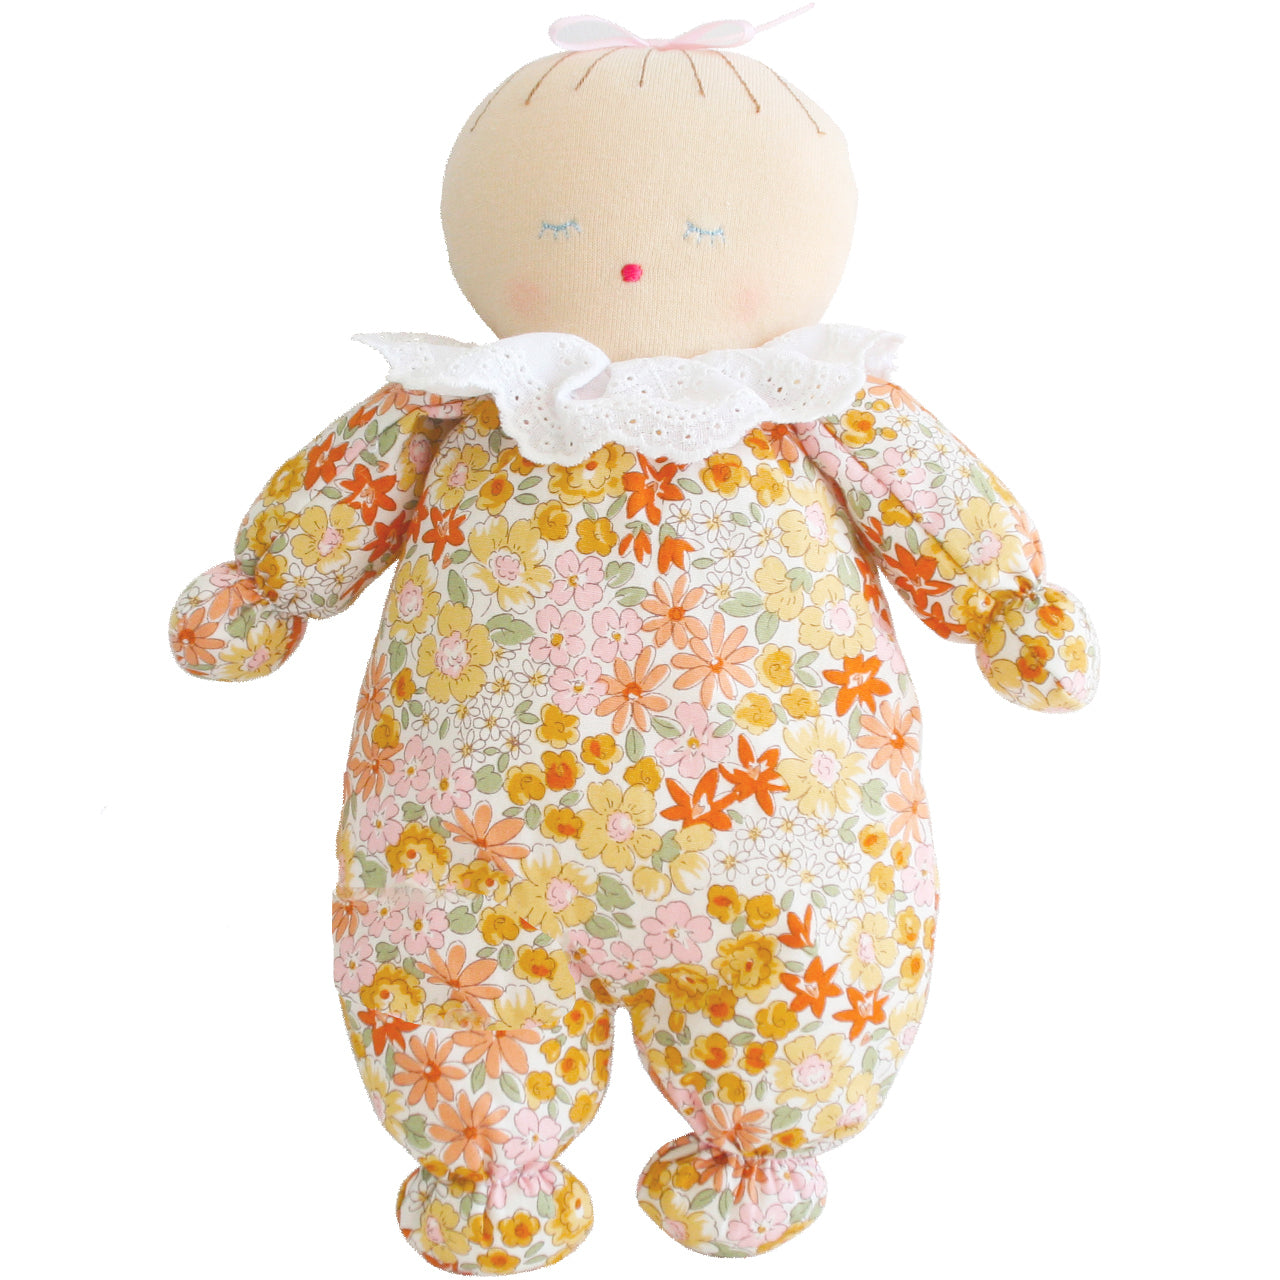 Alimrose - Asleep Awake Baby Doll 24cm (Sweet Marigold)